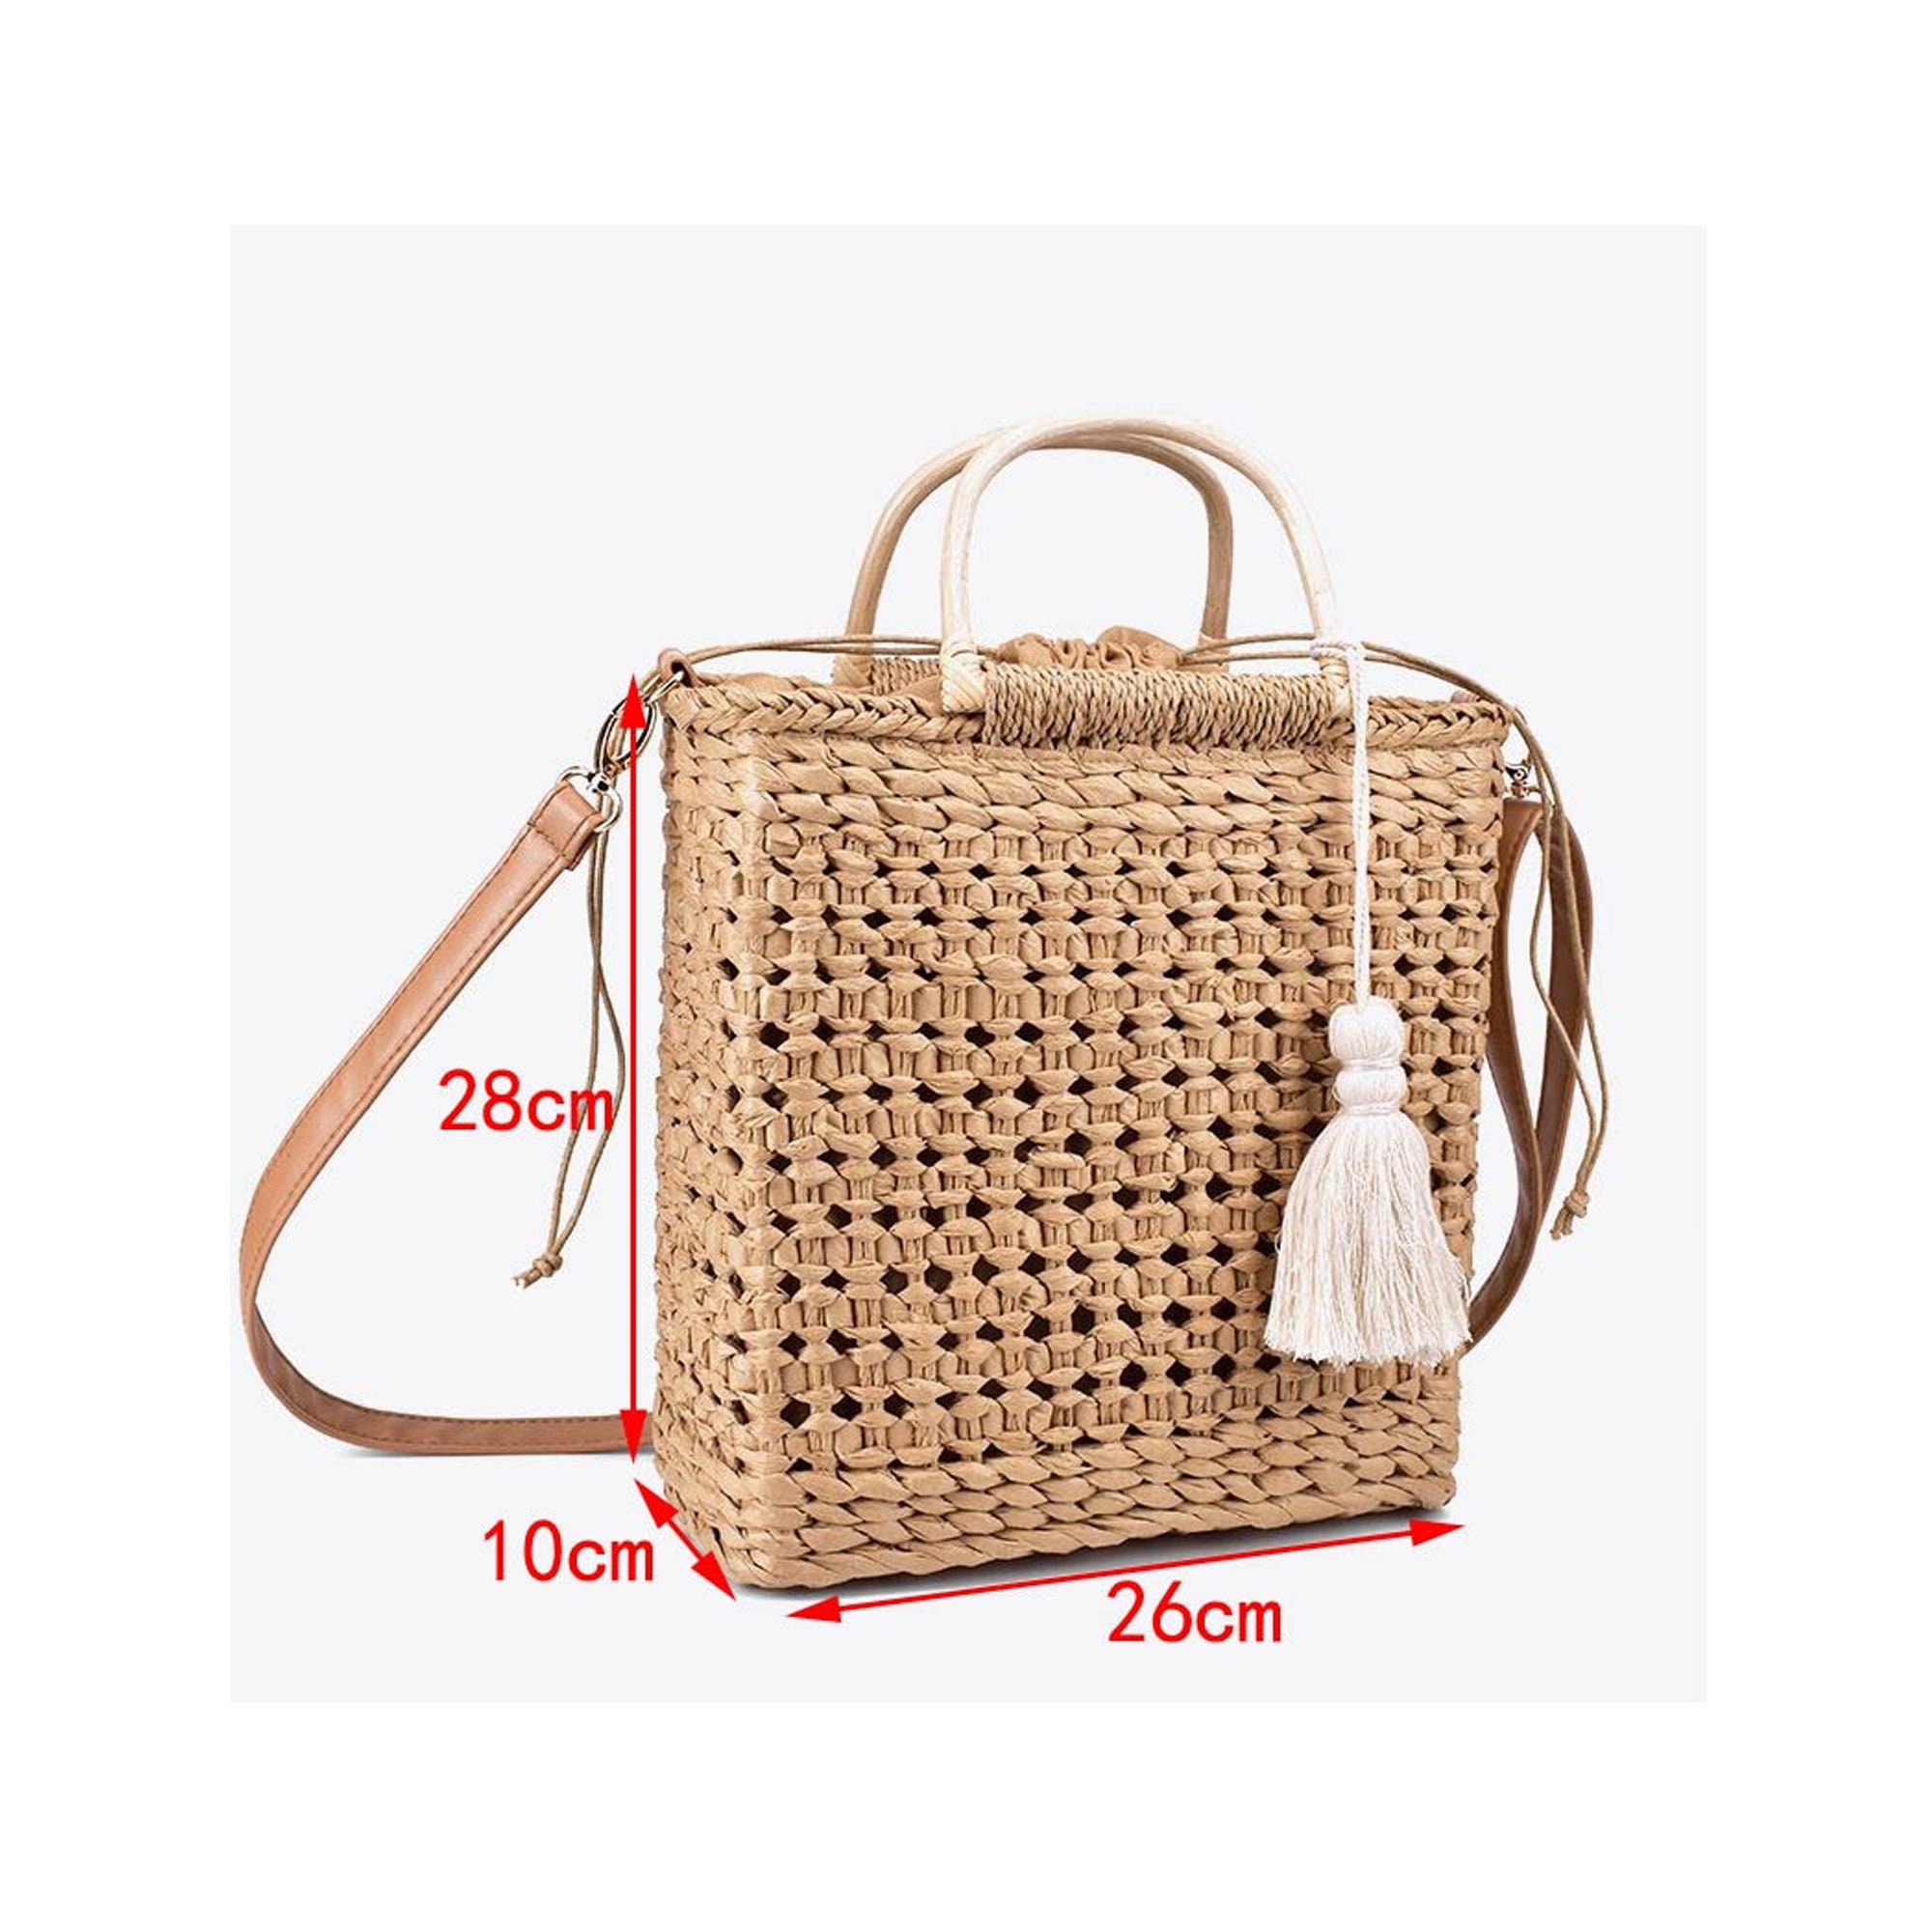 Straw Beach Bag Straw Handbag Straw Bag Leather Handle PU | Etsy